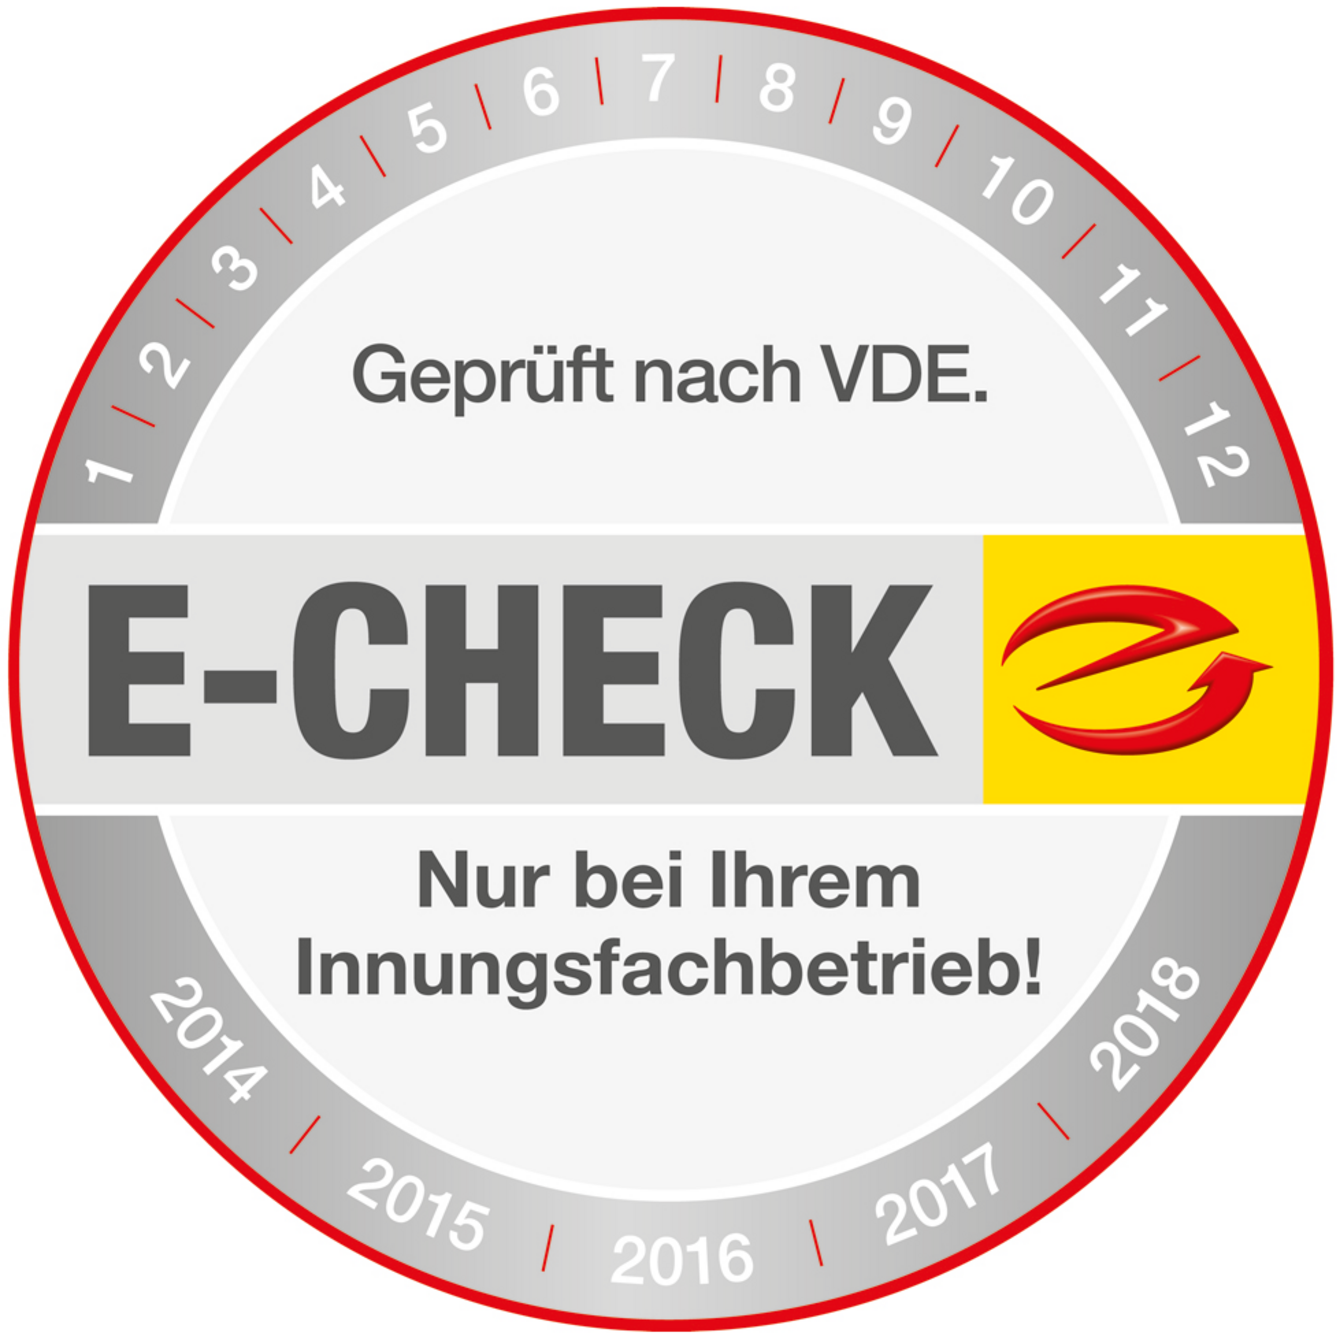 Der E-Check bei Ulrich Frank GmbH in Hamburg